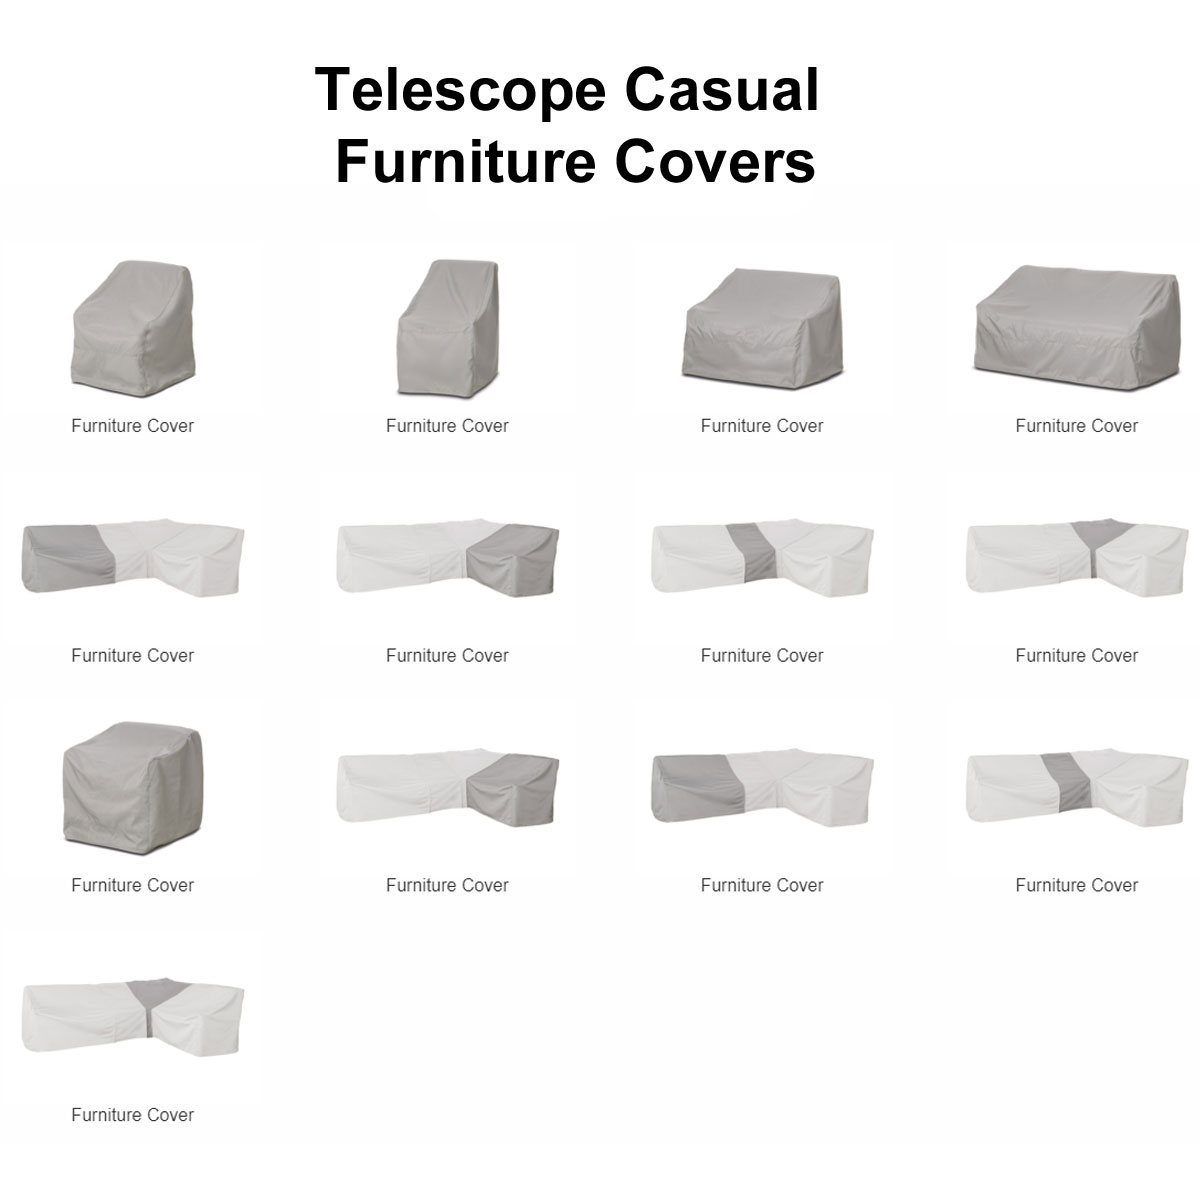 Telescope Casual Furniture Covers